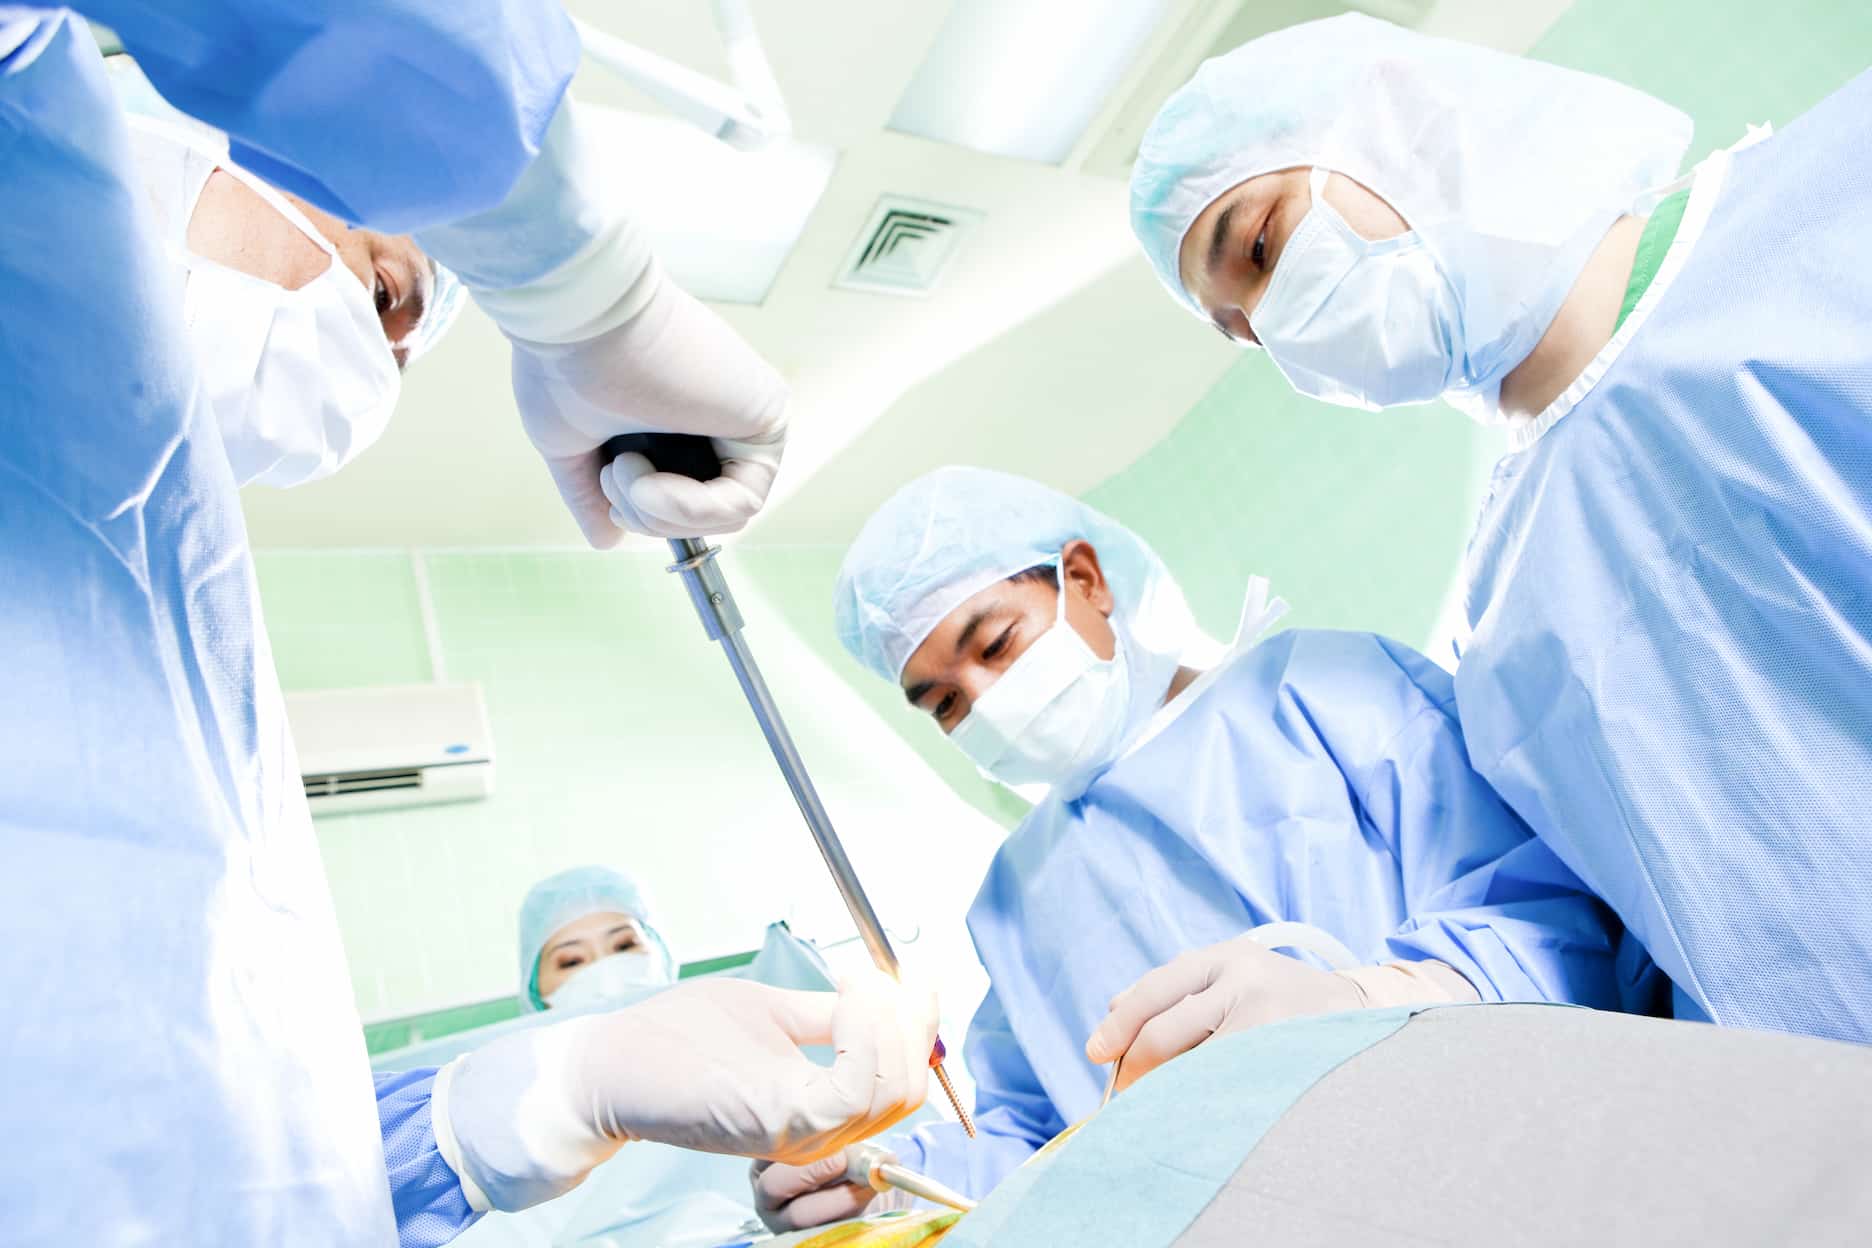 Turkiye laminectomy surgery procedure